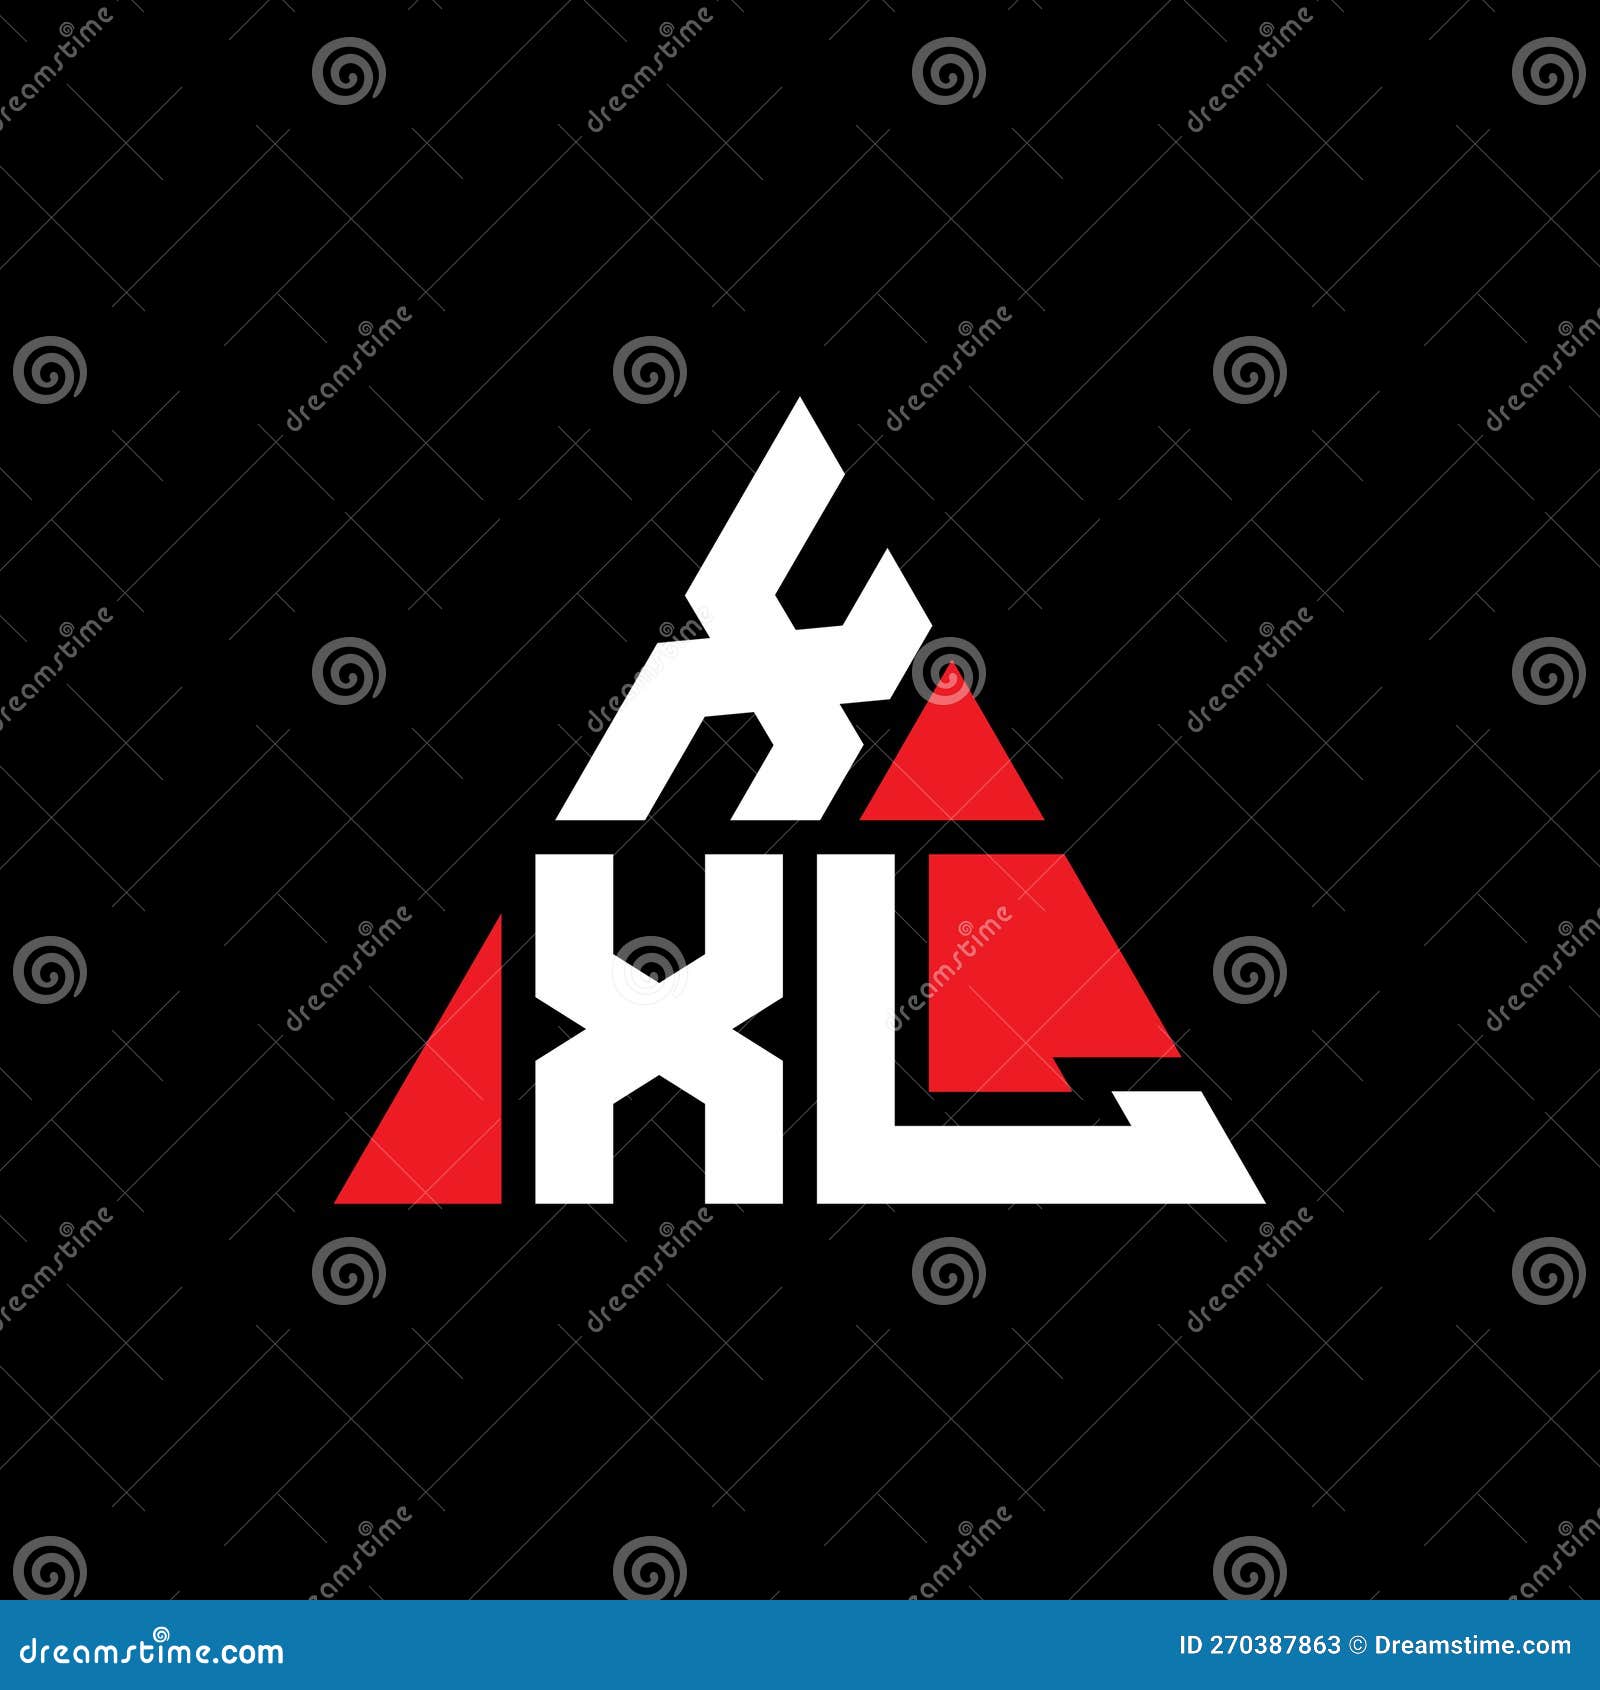 XXL Triangle Letter Logo Design with Triangle Shape. XXL Triangle Logo ...